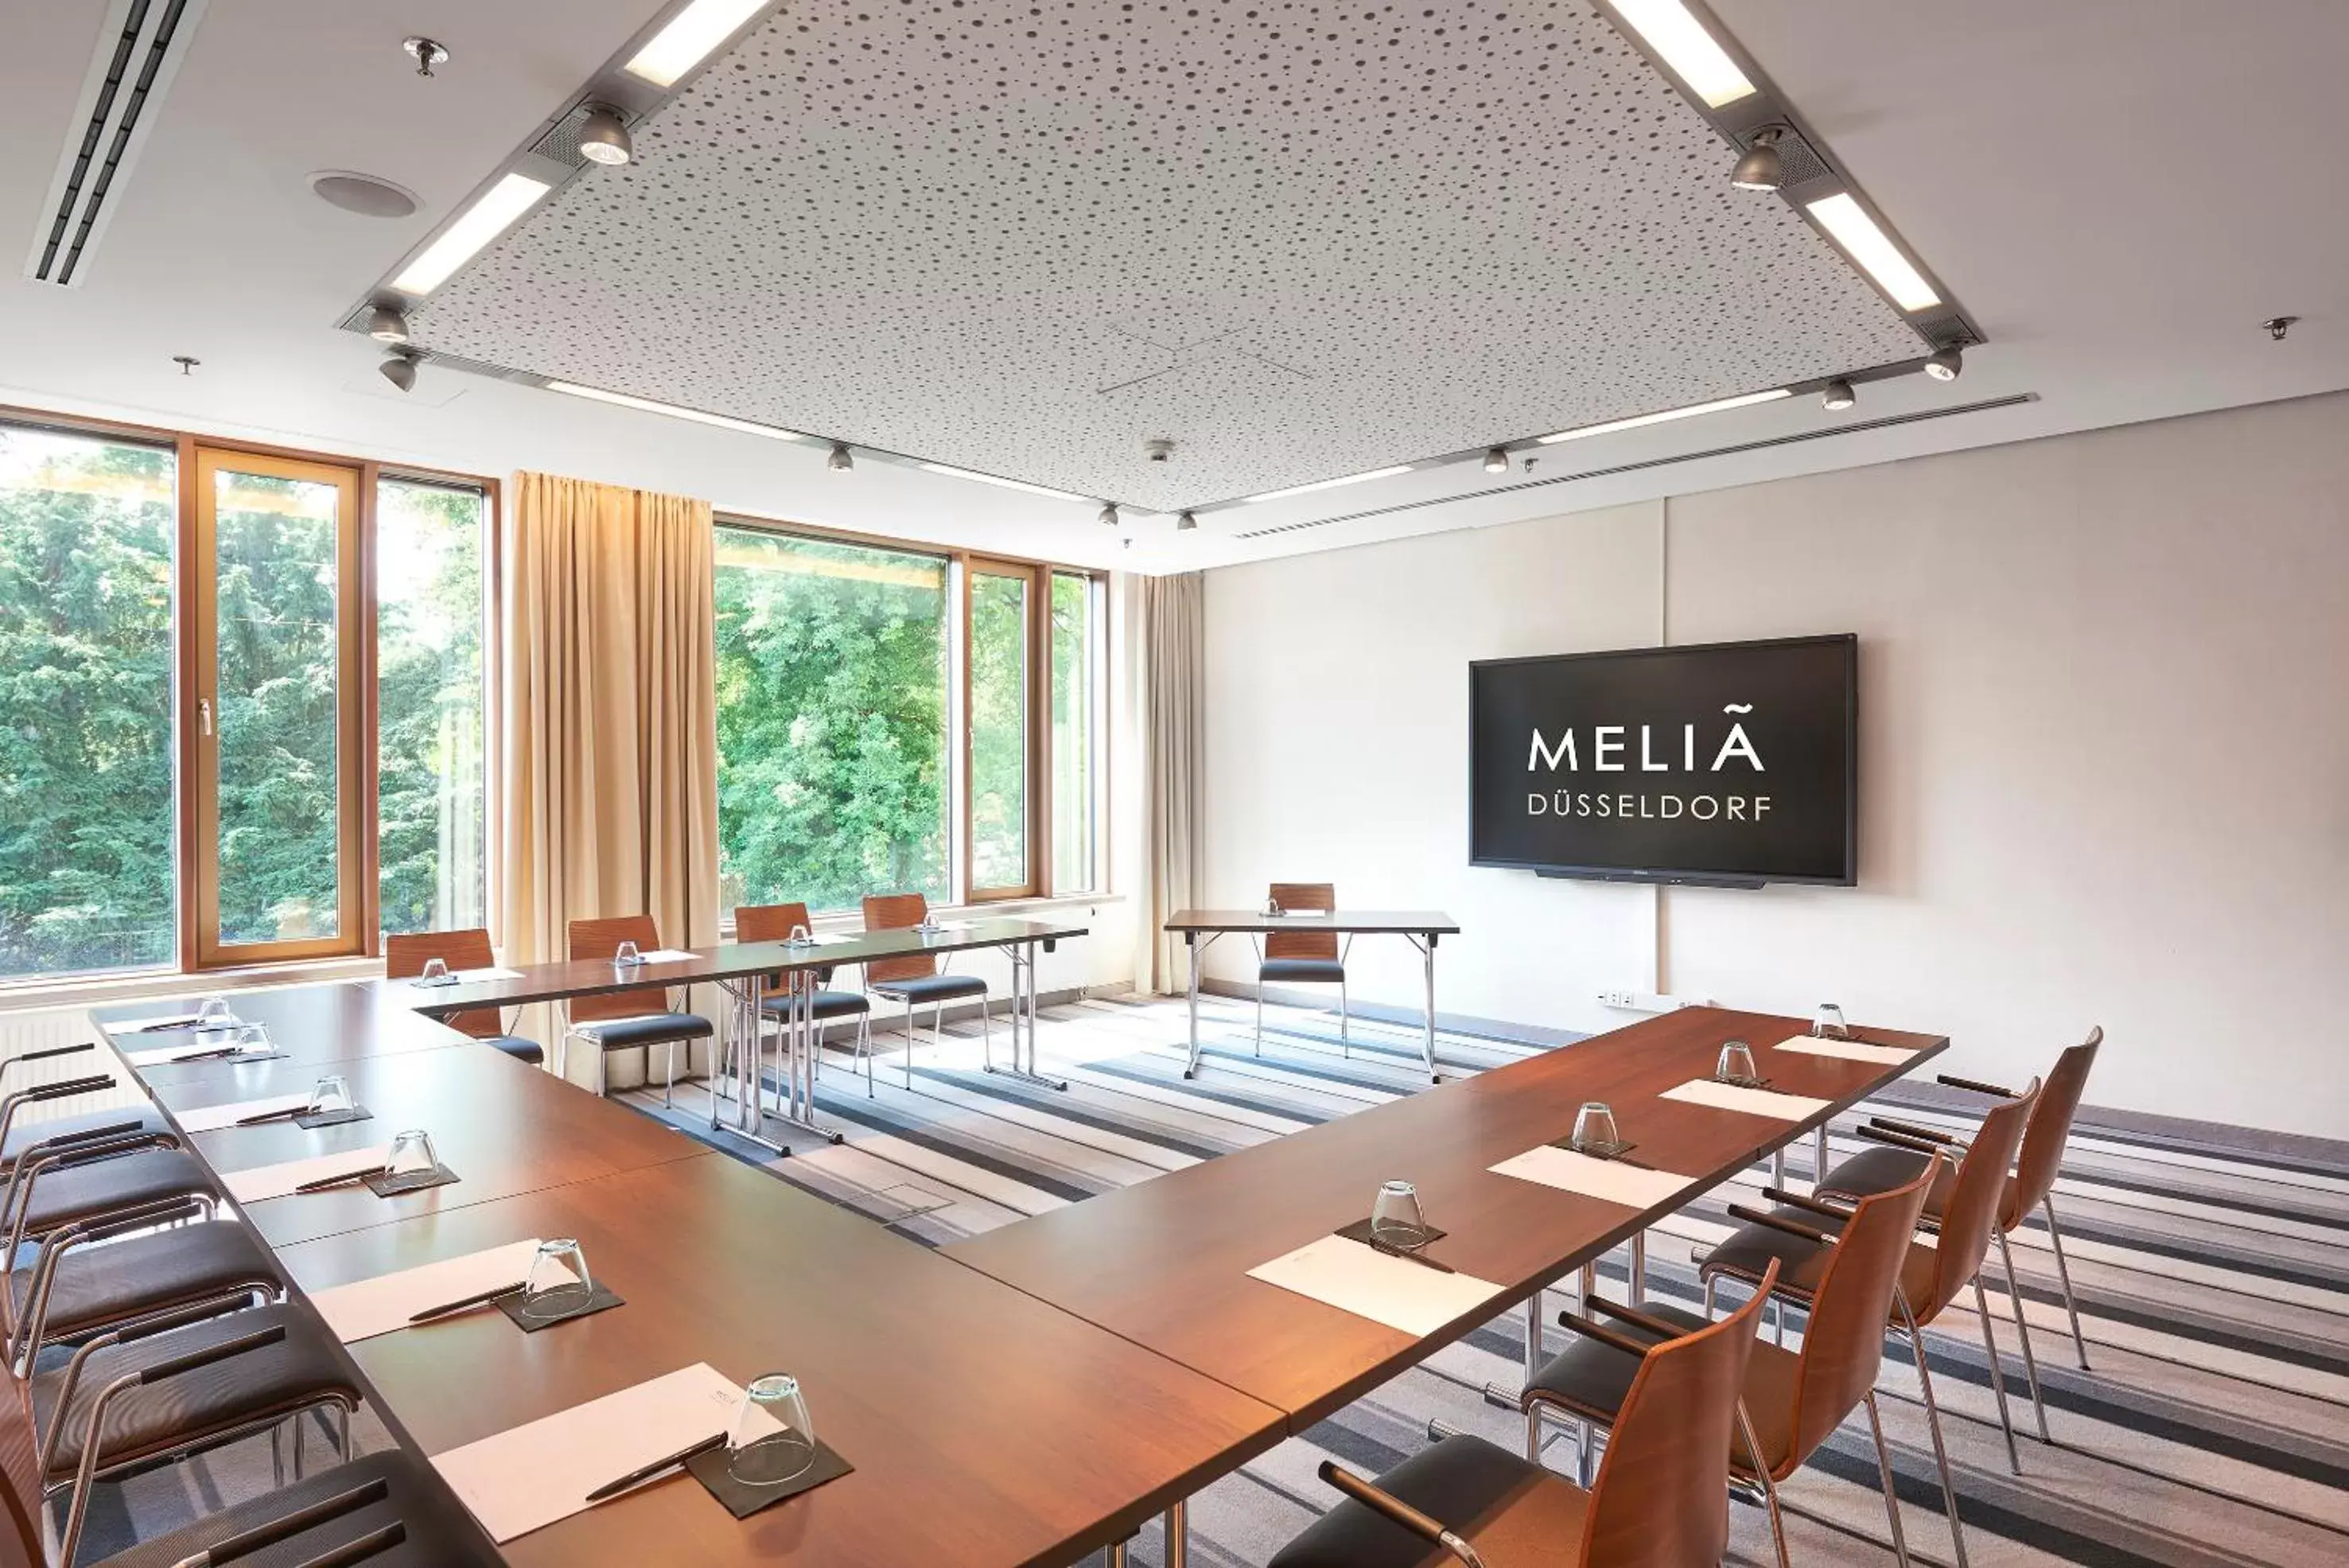 Meeting/conference room in Meliá Düsseldorf